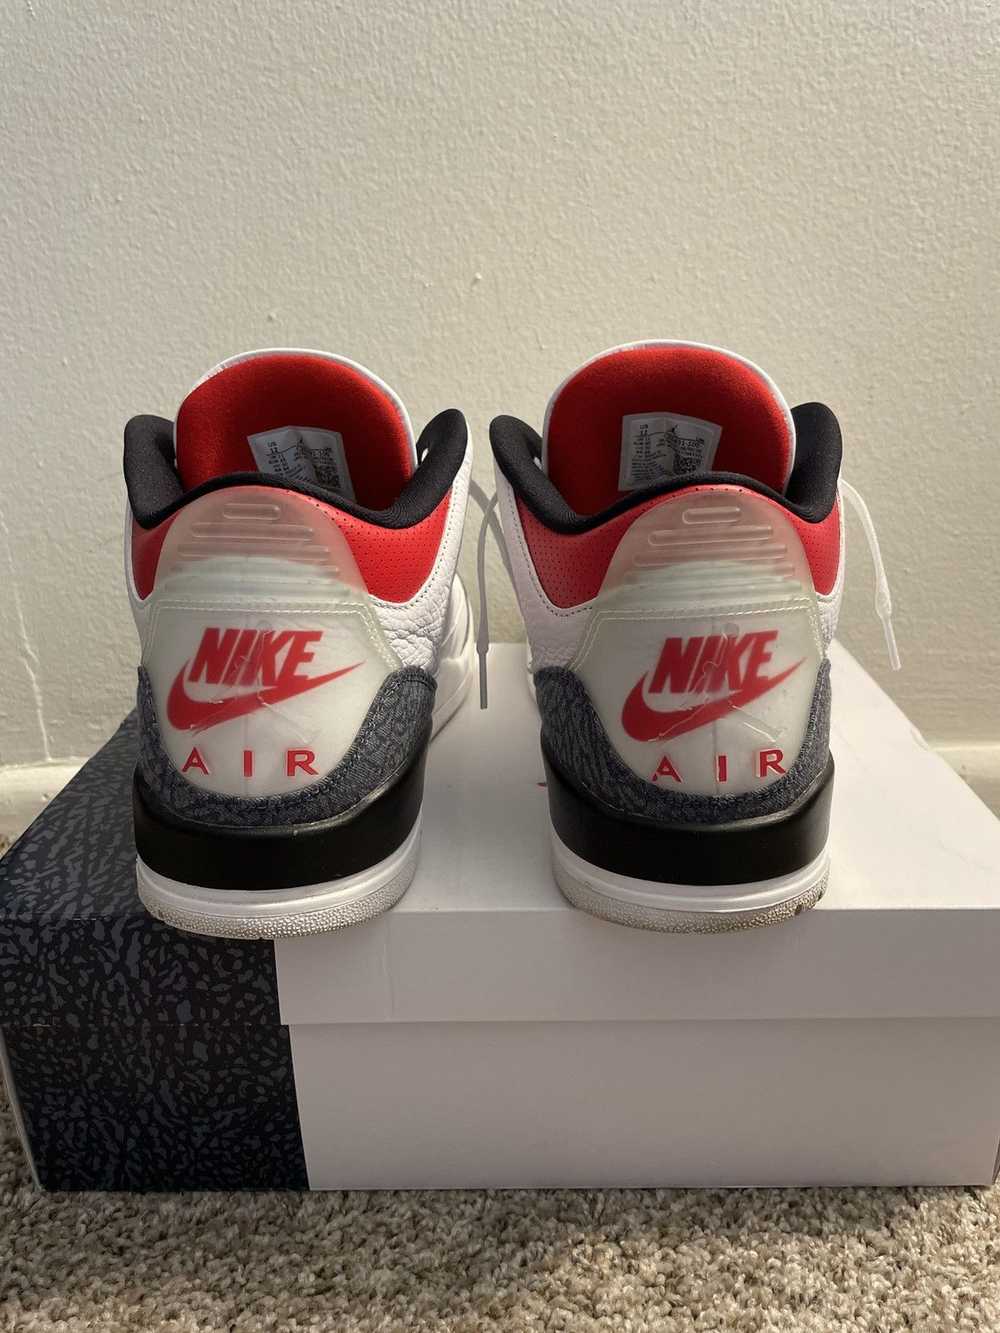 Jordan Brand × Nike Jordan 3 Retro “Denim” - image 5